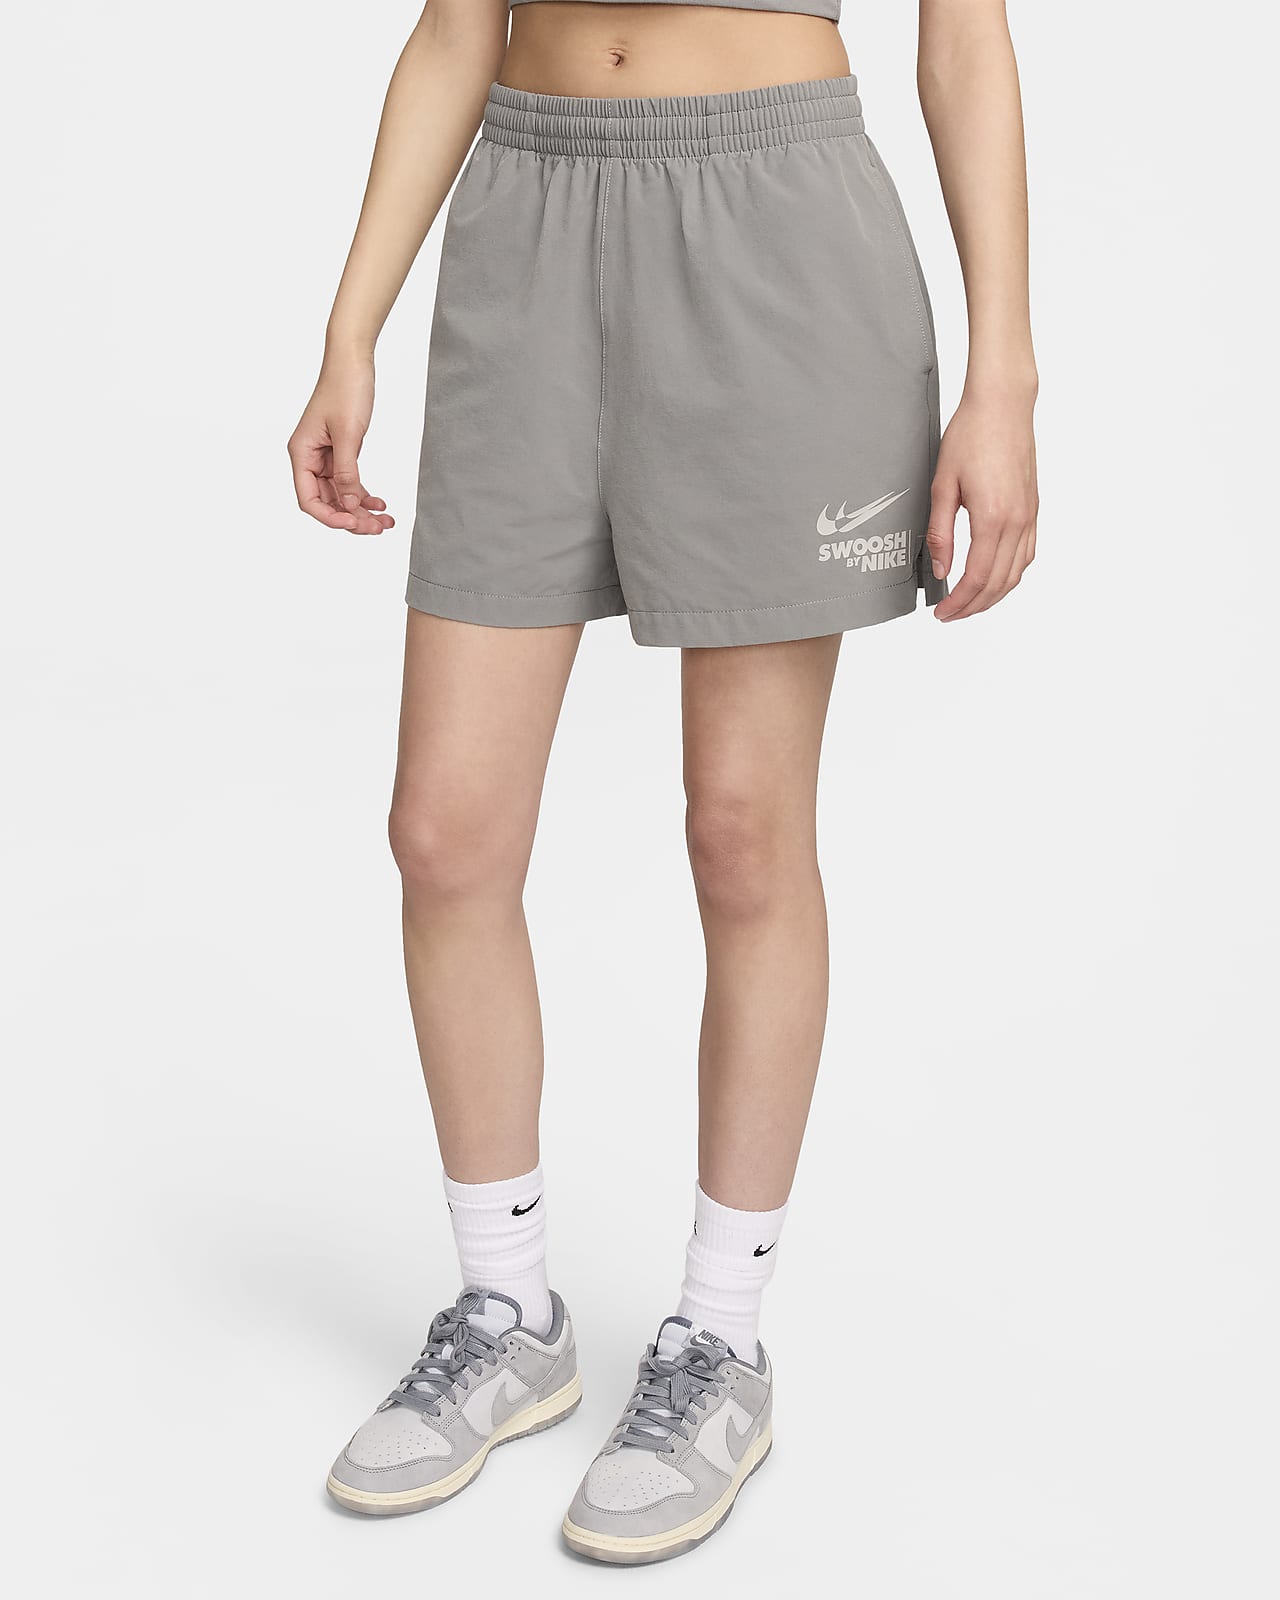 Nike Sportswear Women's Woven Shorts